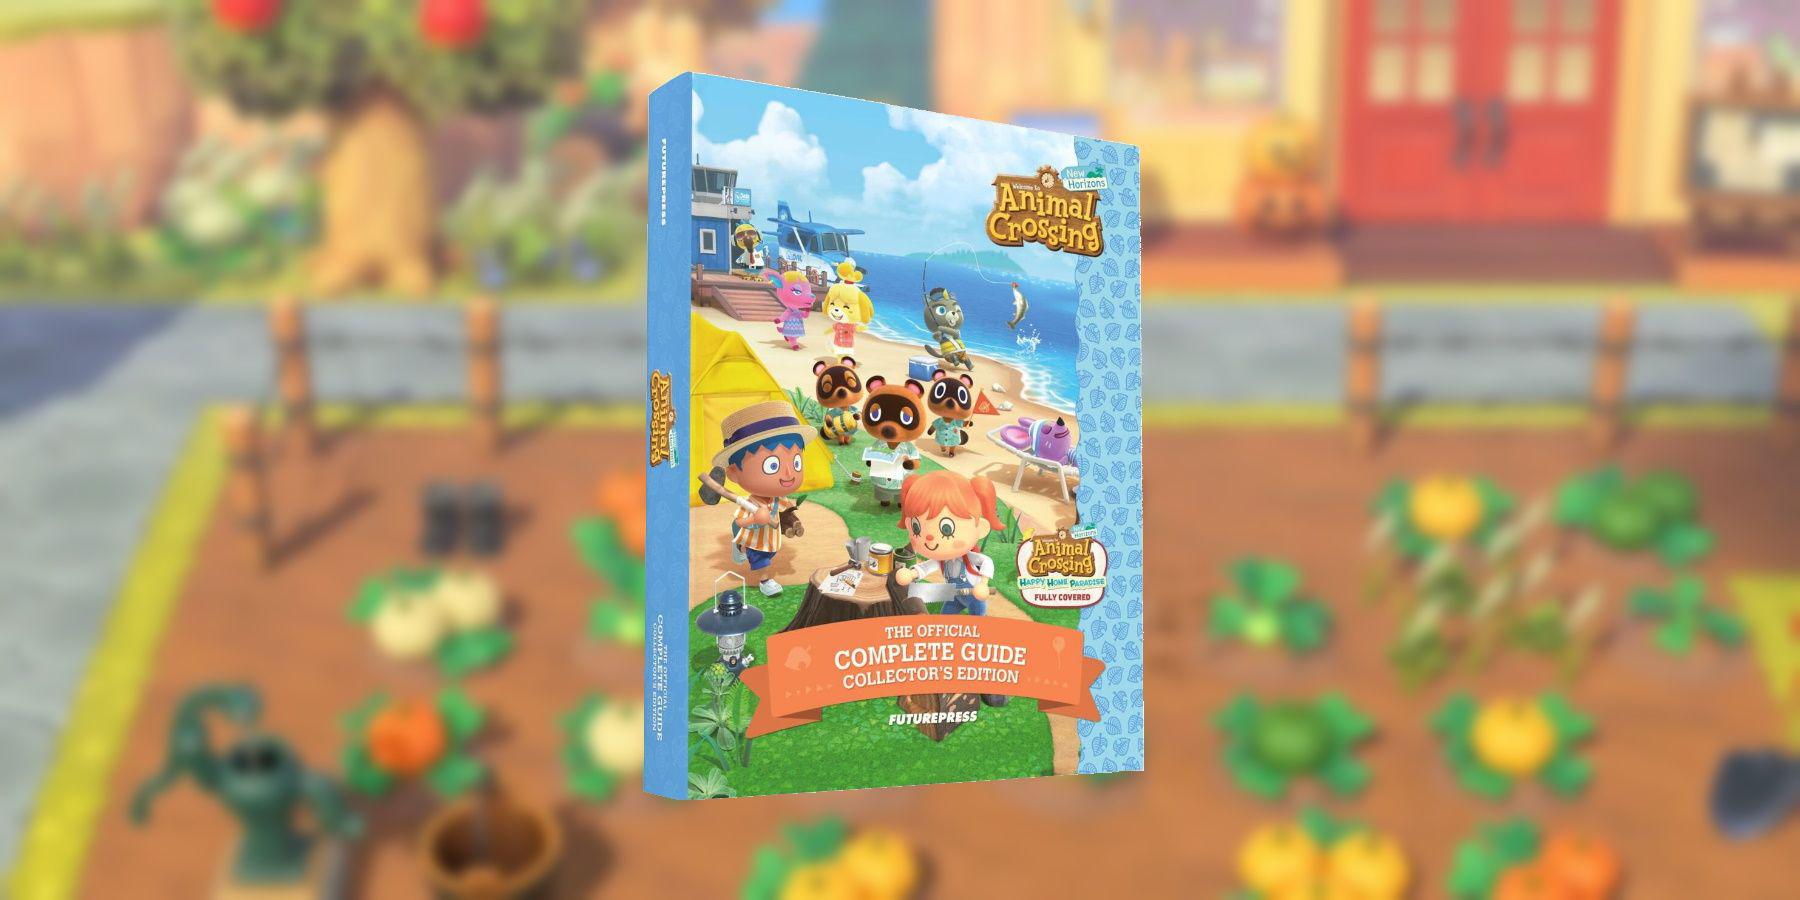 Animal Crossing: New Horizons Getting Giant Guide Book 3 anos após o lançamento